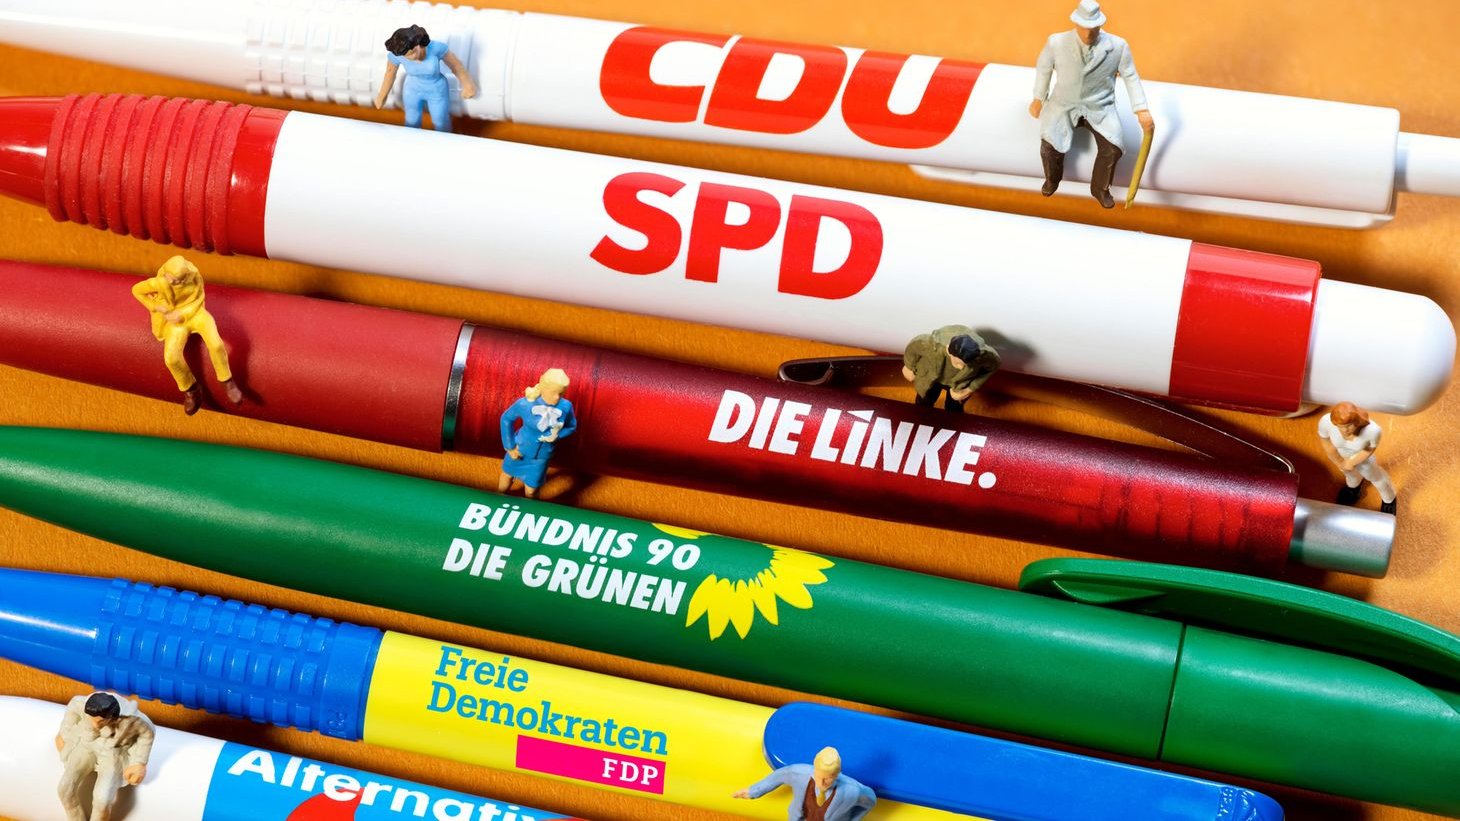 Bundestagswahl 2021: Welche Parteien haben welche Chancen?